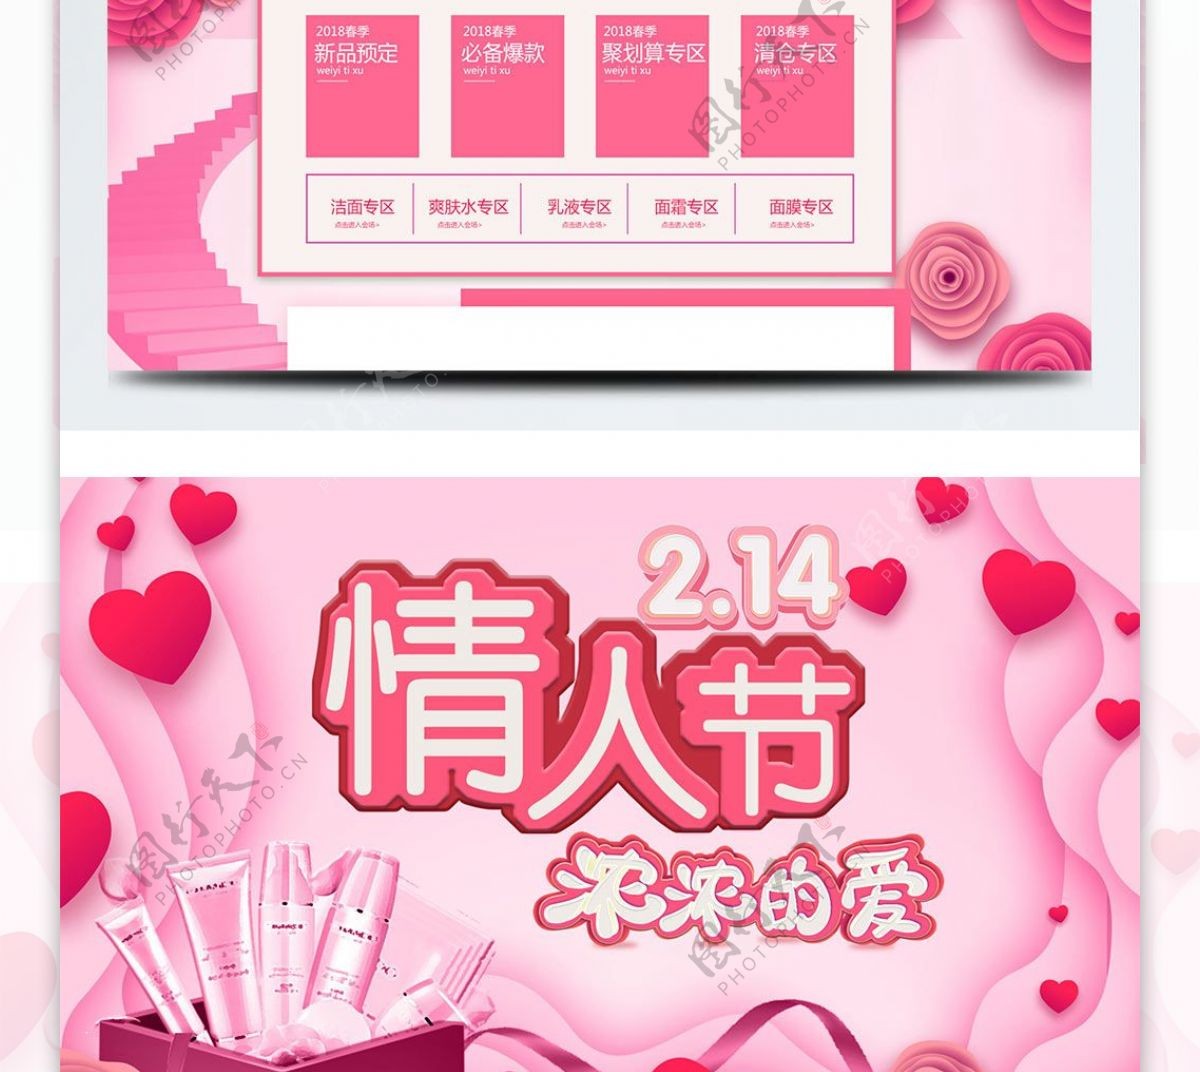 粉色节日风玫瑰情人节唯美淘宝电商首页模板